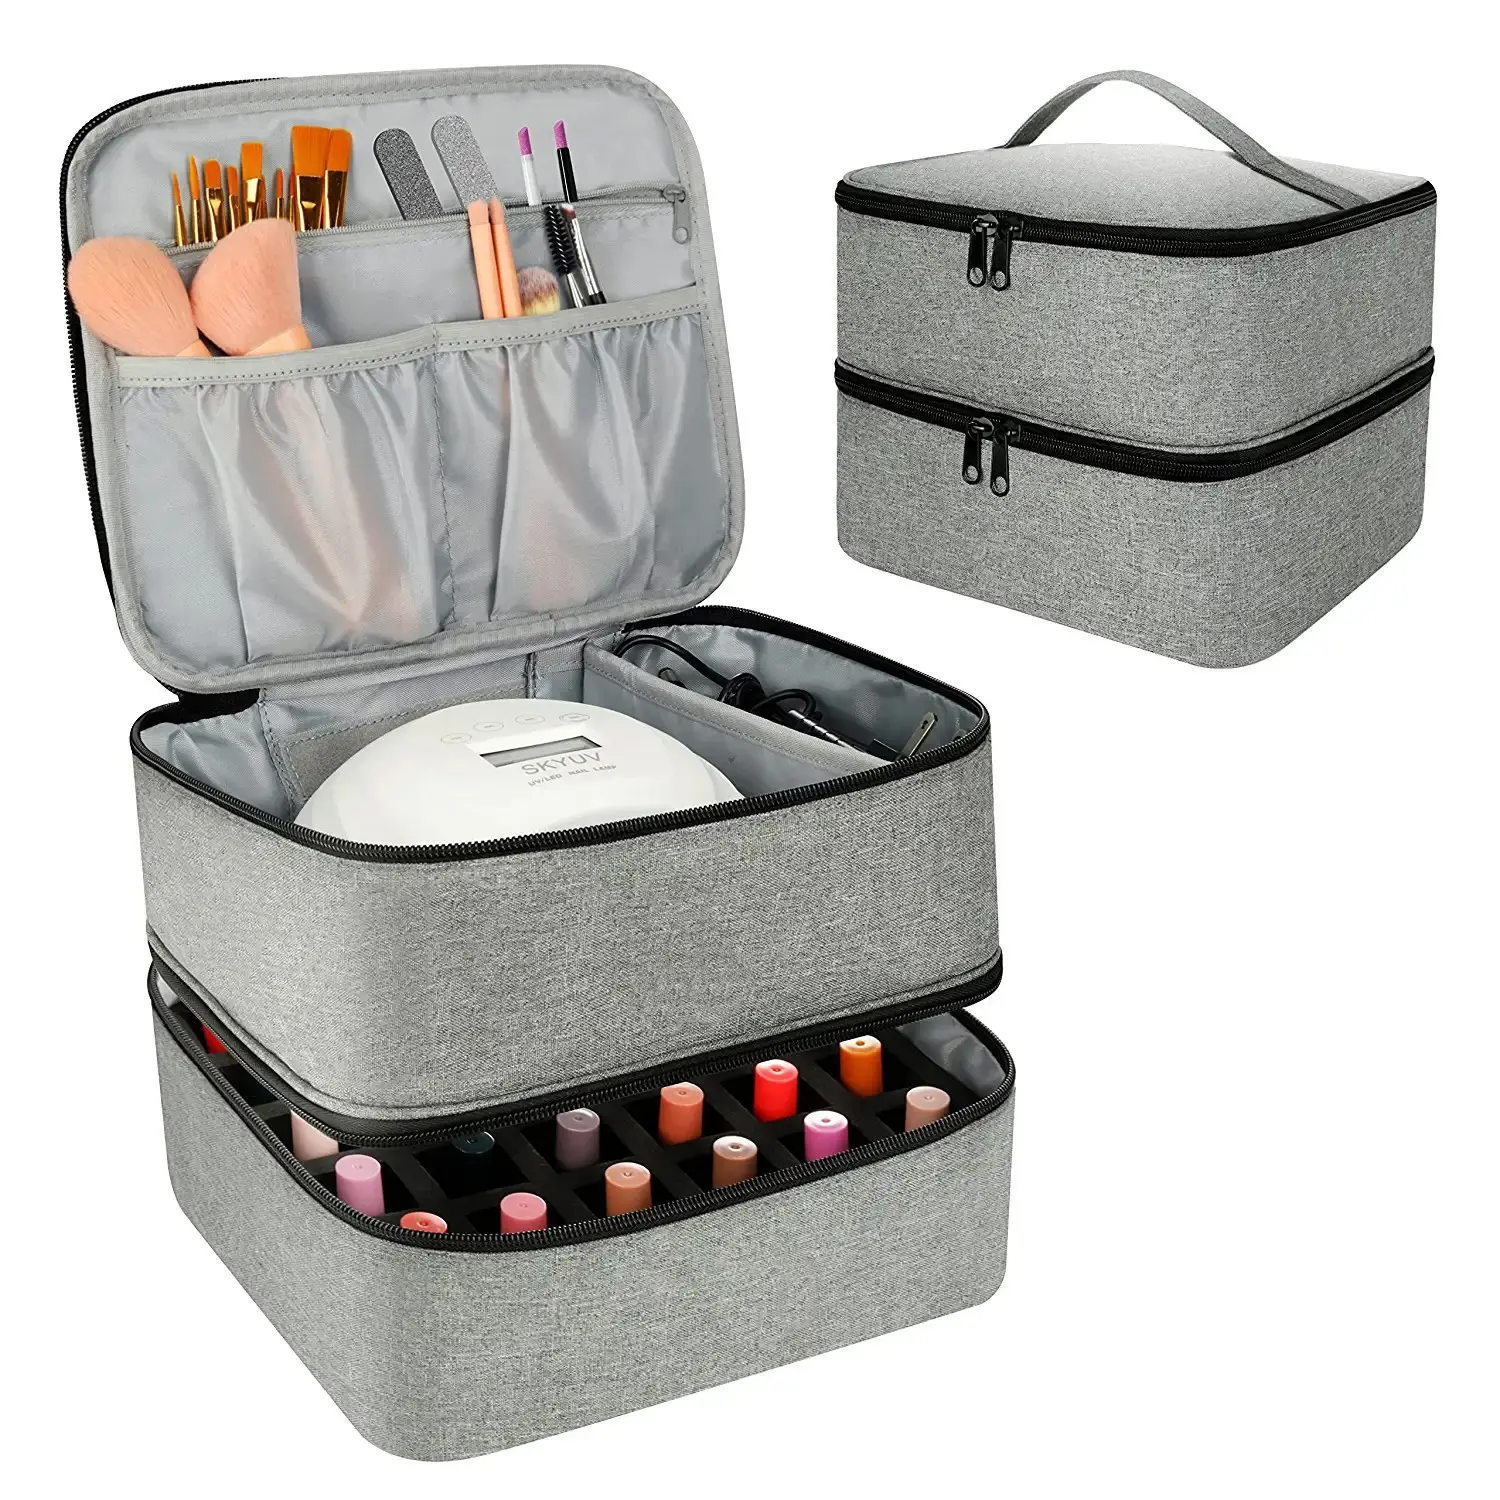 TS nueva bolsa de transporte de esmalte de uñas bolsa de almacenamiento de esmalte de uñas de doble capa puede contener 30 botellas de bolsa de cosméticos